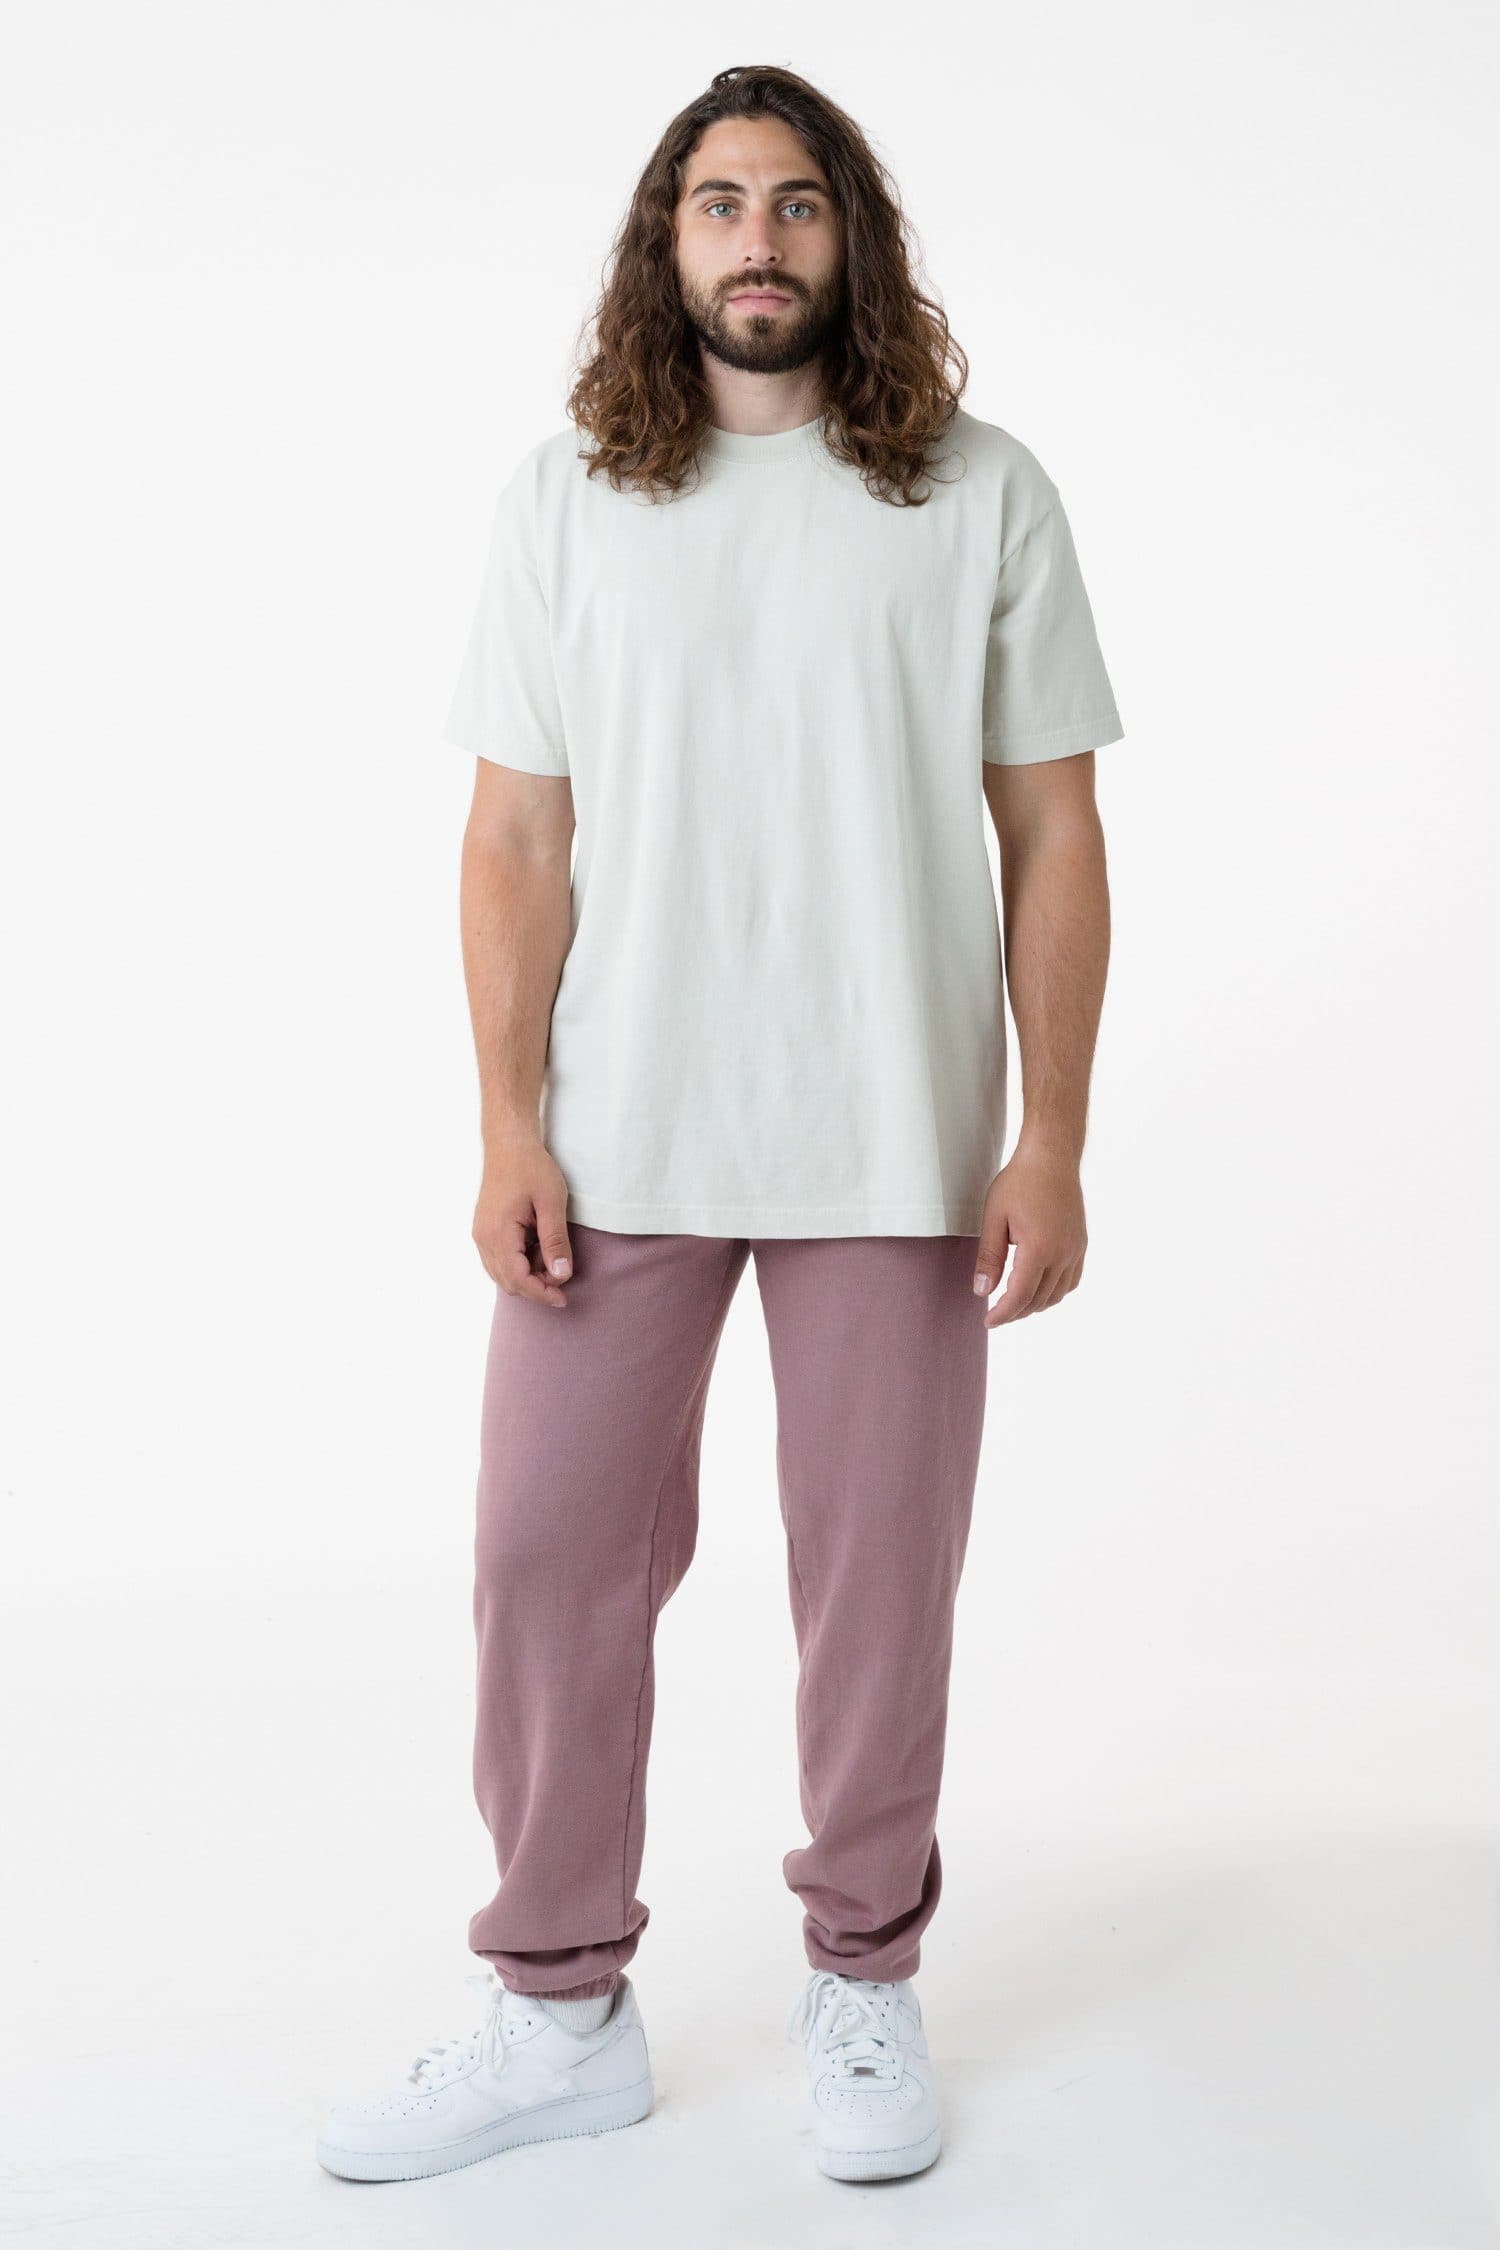 Los Angeles Apparel | Garment Dye Heavy Fleece Sweatpant for Men in Dijon, Size 2XL